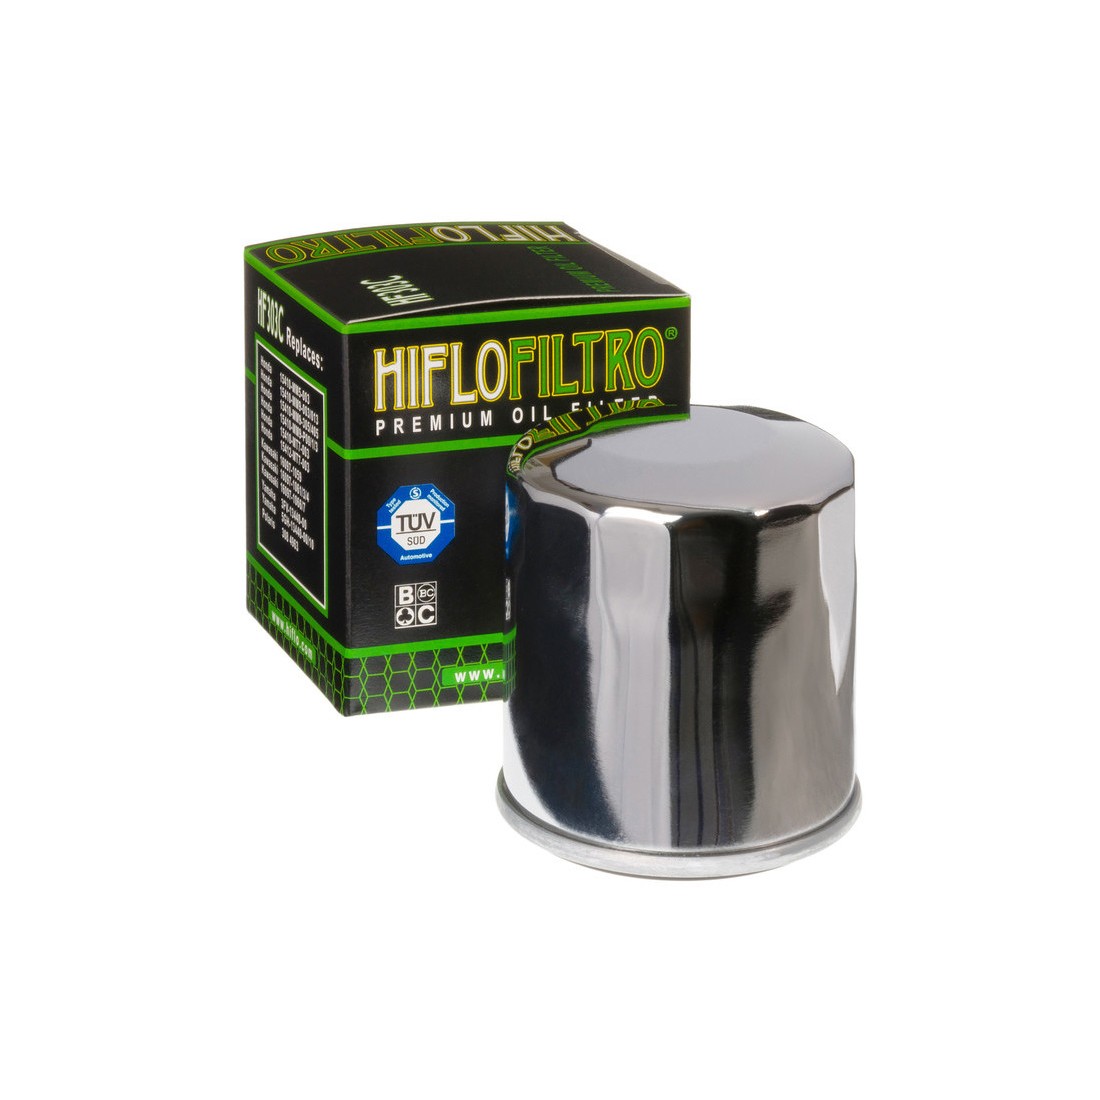 Hiflofiltro Filtro de Aceite HF303C Cromado